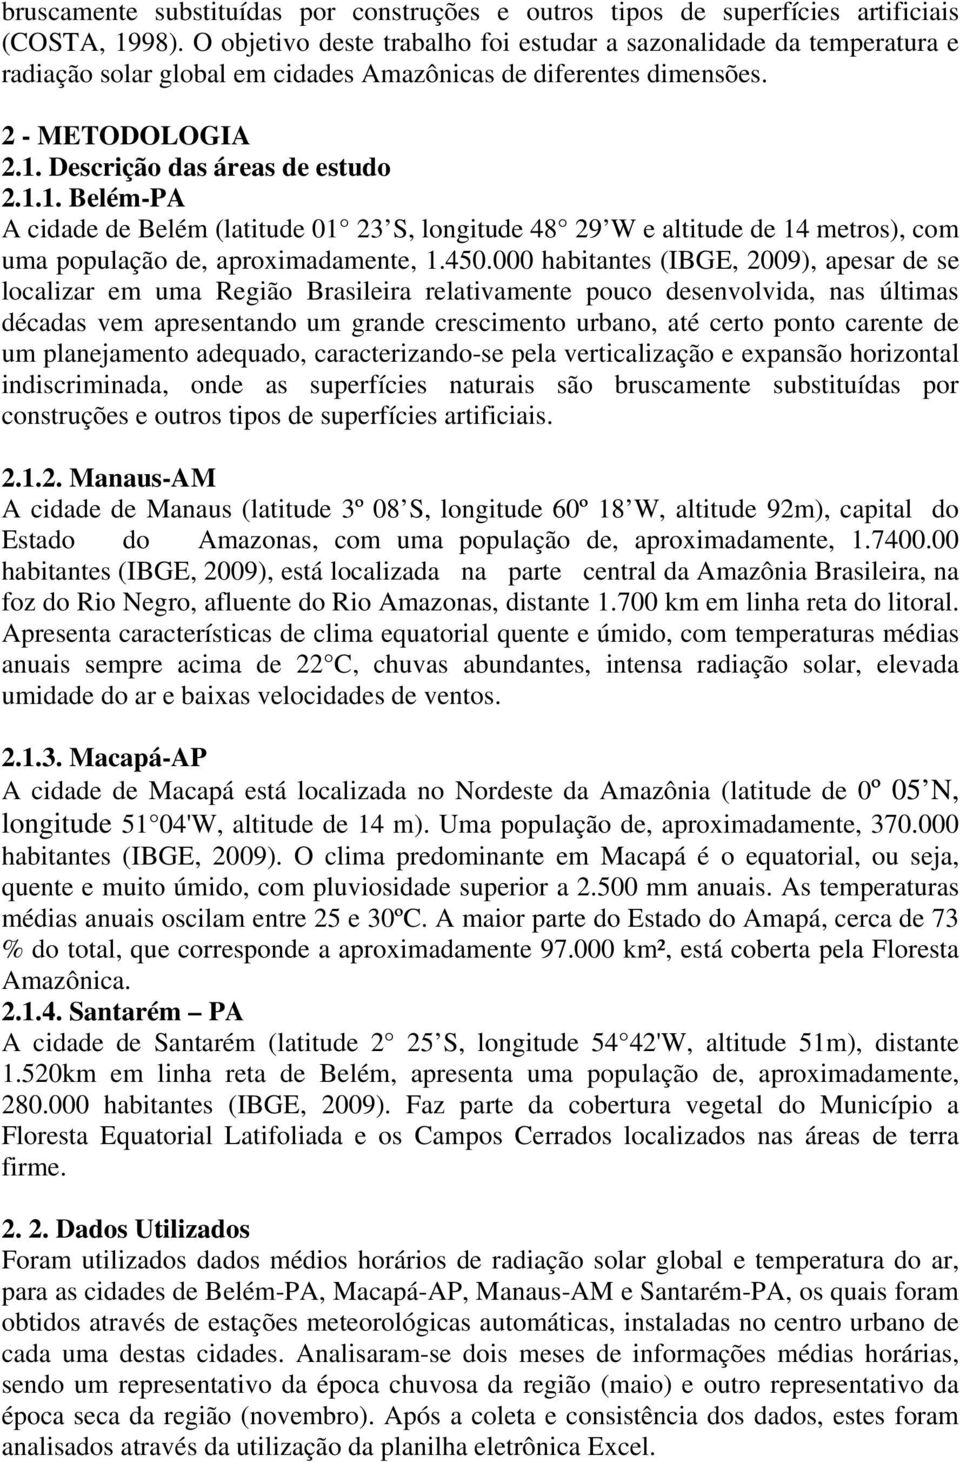 Descrição das áreas de estudo 2.1.1. Belém-PA A cidade de Belém (latitude 01 23 S, longitude 48 29 W e altitude de 14 metros), com uma população de, aproximadamente, 1.450.